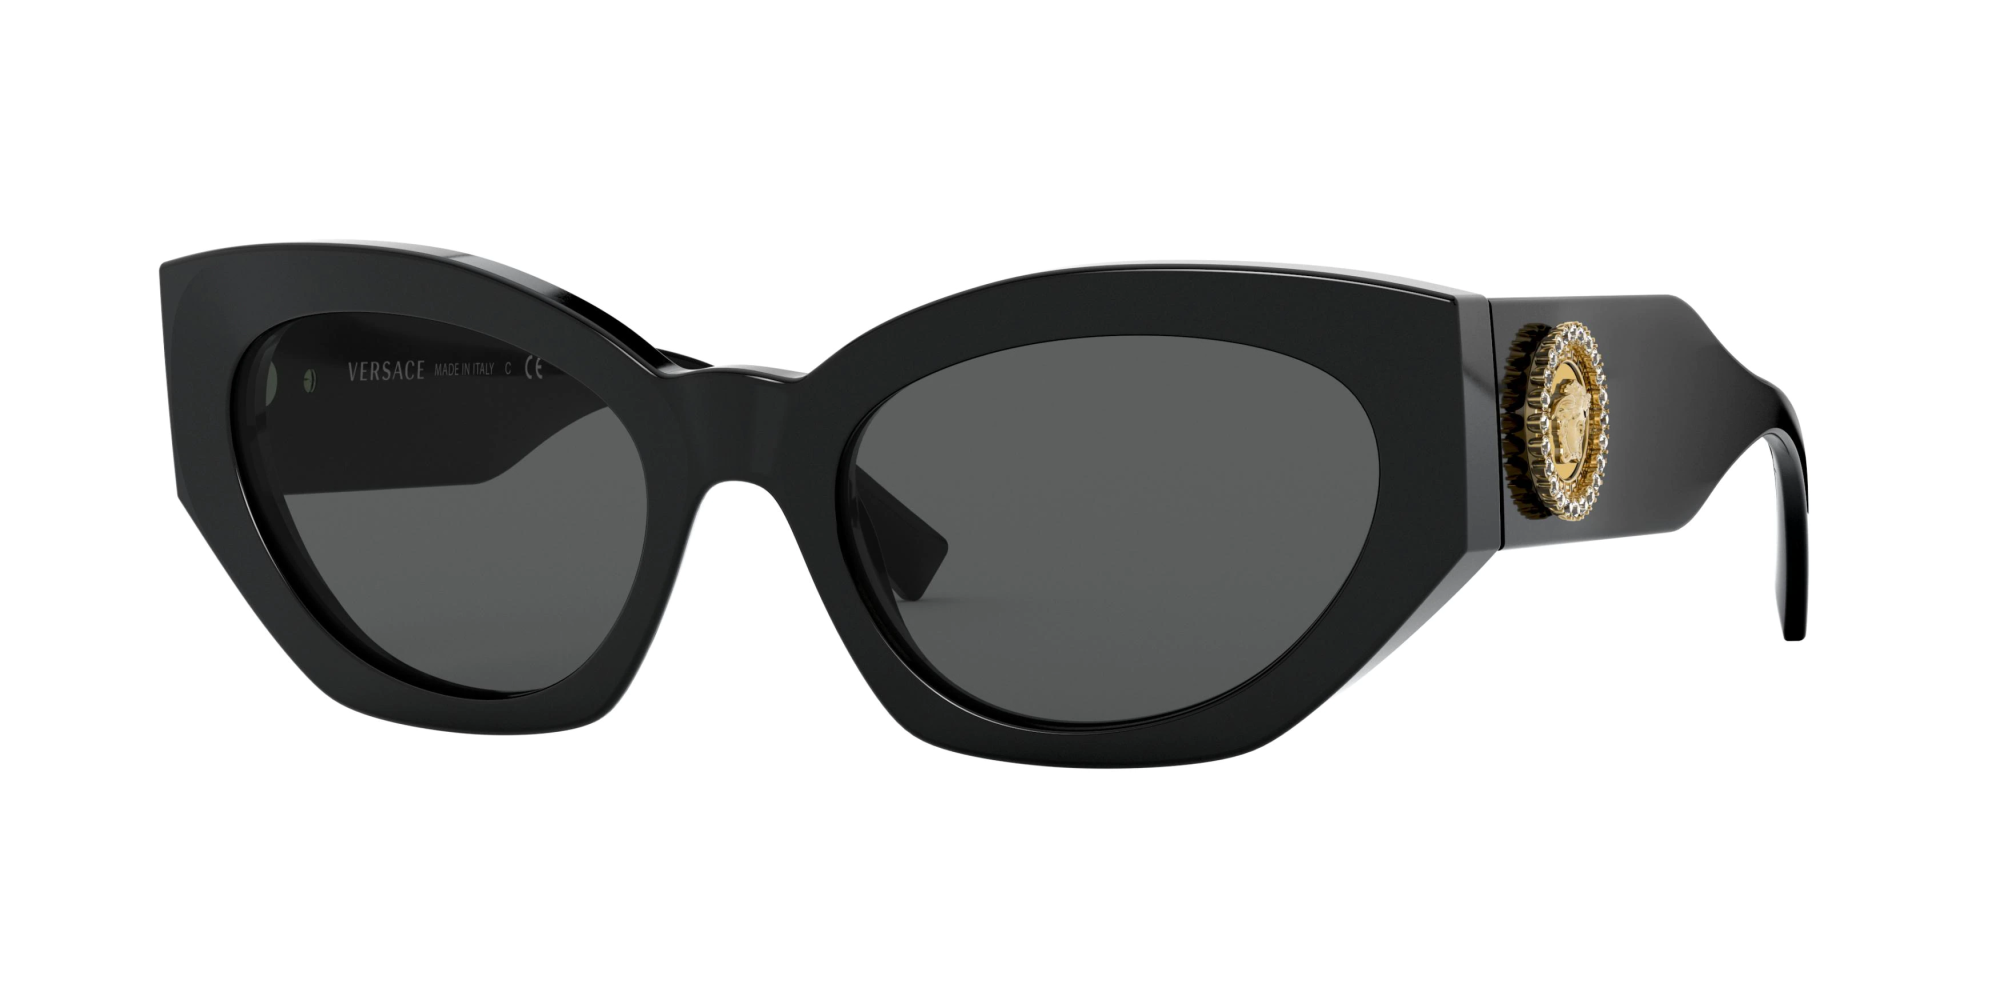 Очки Versace 4435. Versace 0ve4376b. Versace Medusa очки солнцезащитные. Очки Versace 4446.